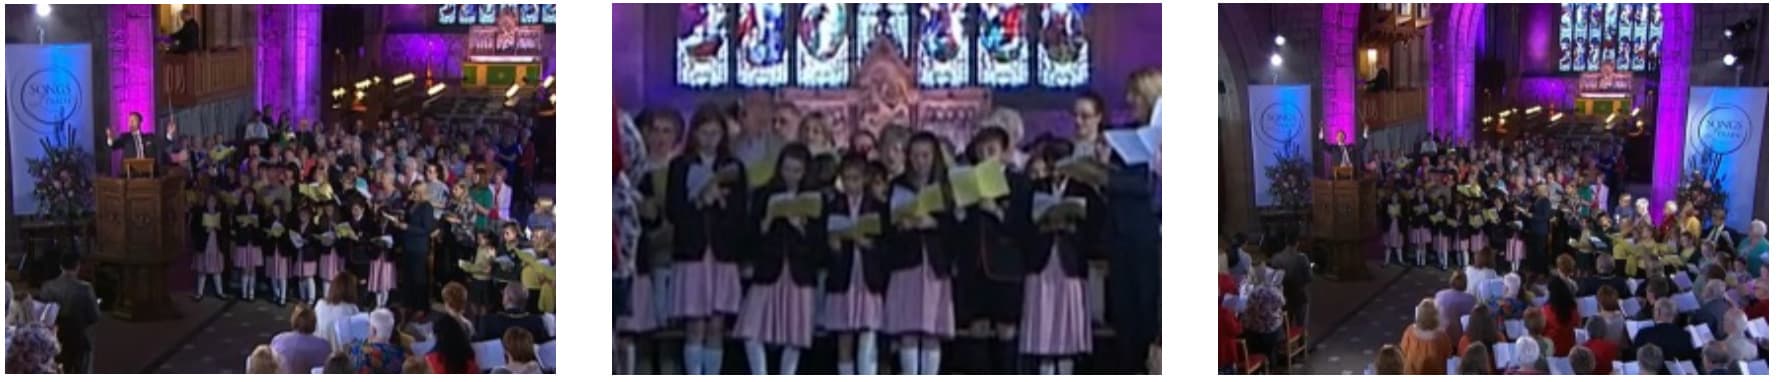 Fairholme Preparatory School: Songs of Praise